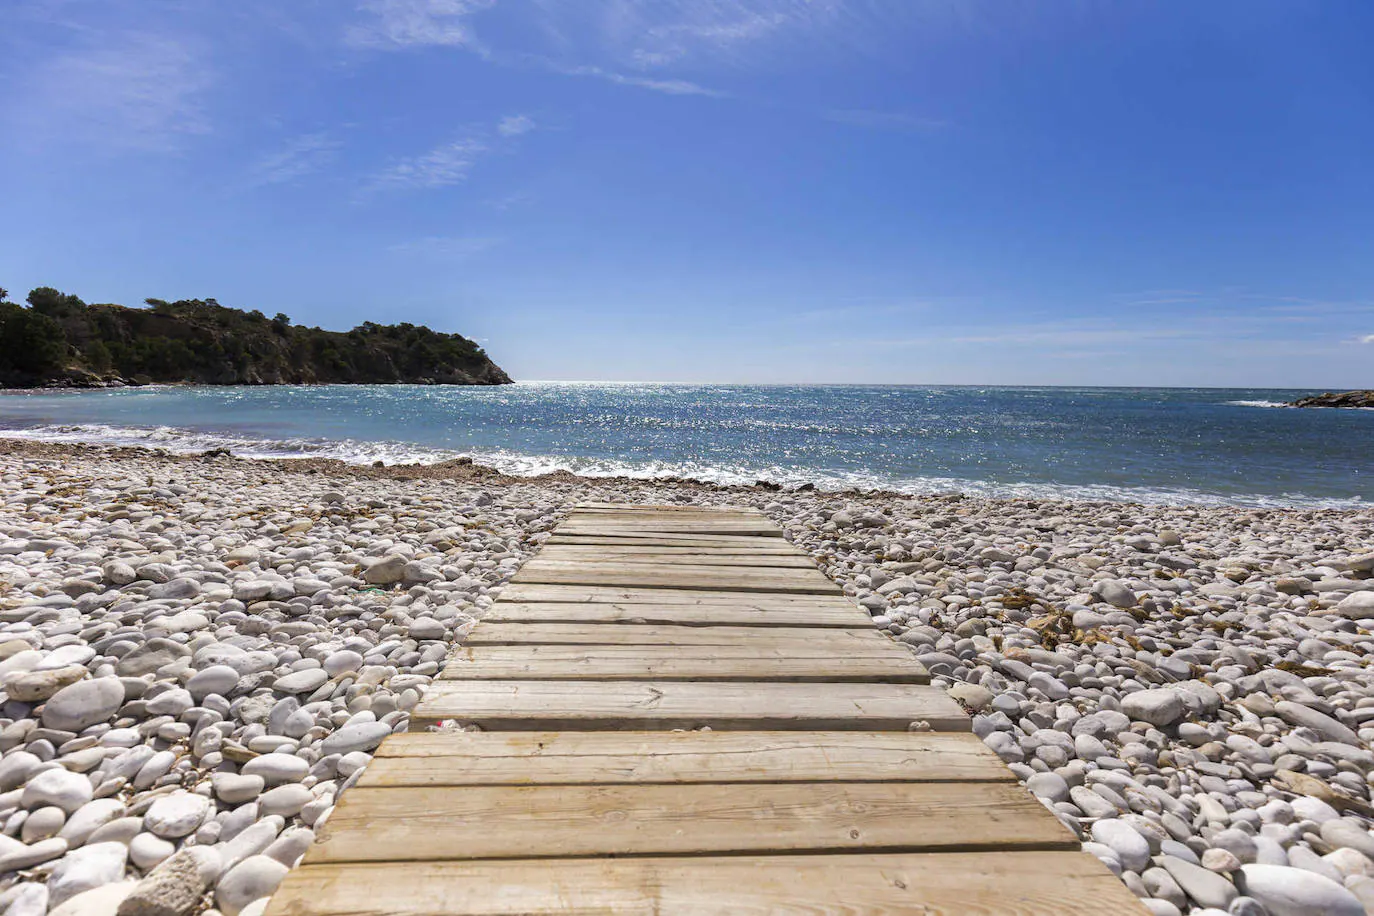 Playa Mascarat es el destino perfecto para aprovechar el sol y el mar este verano.